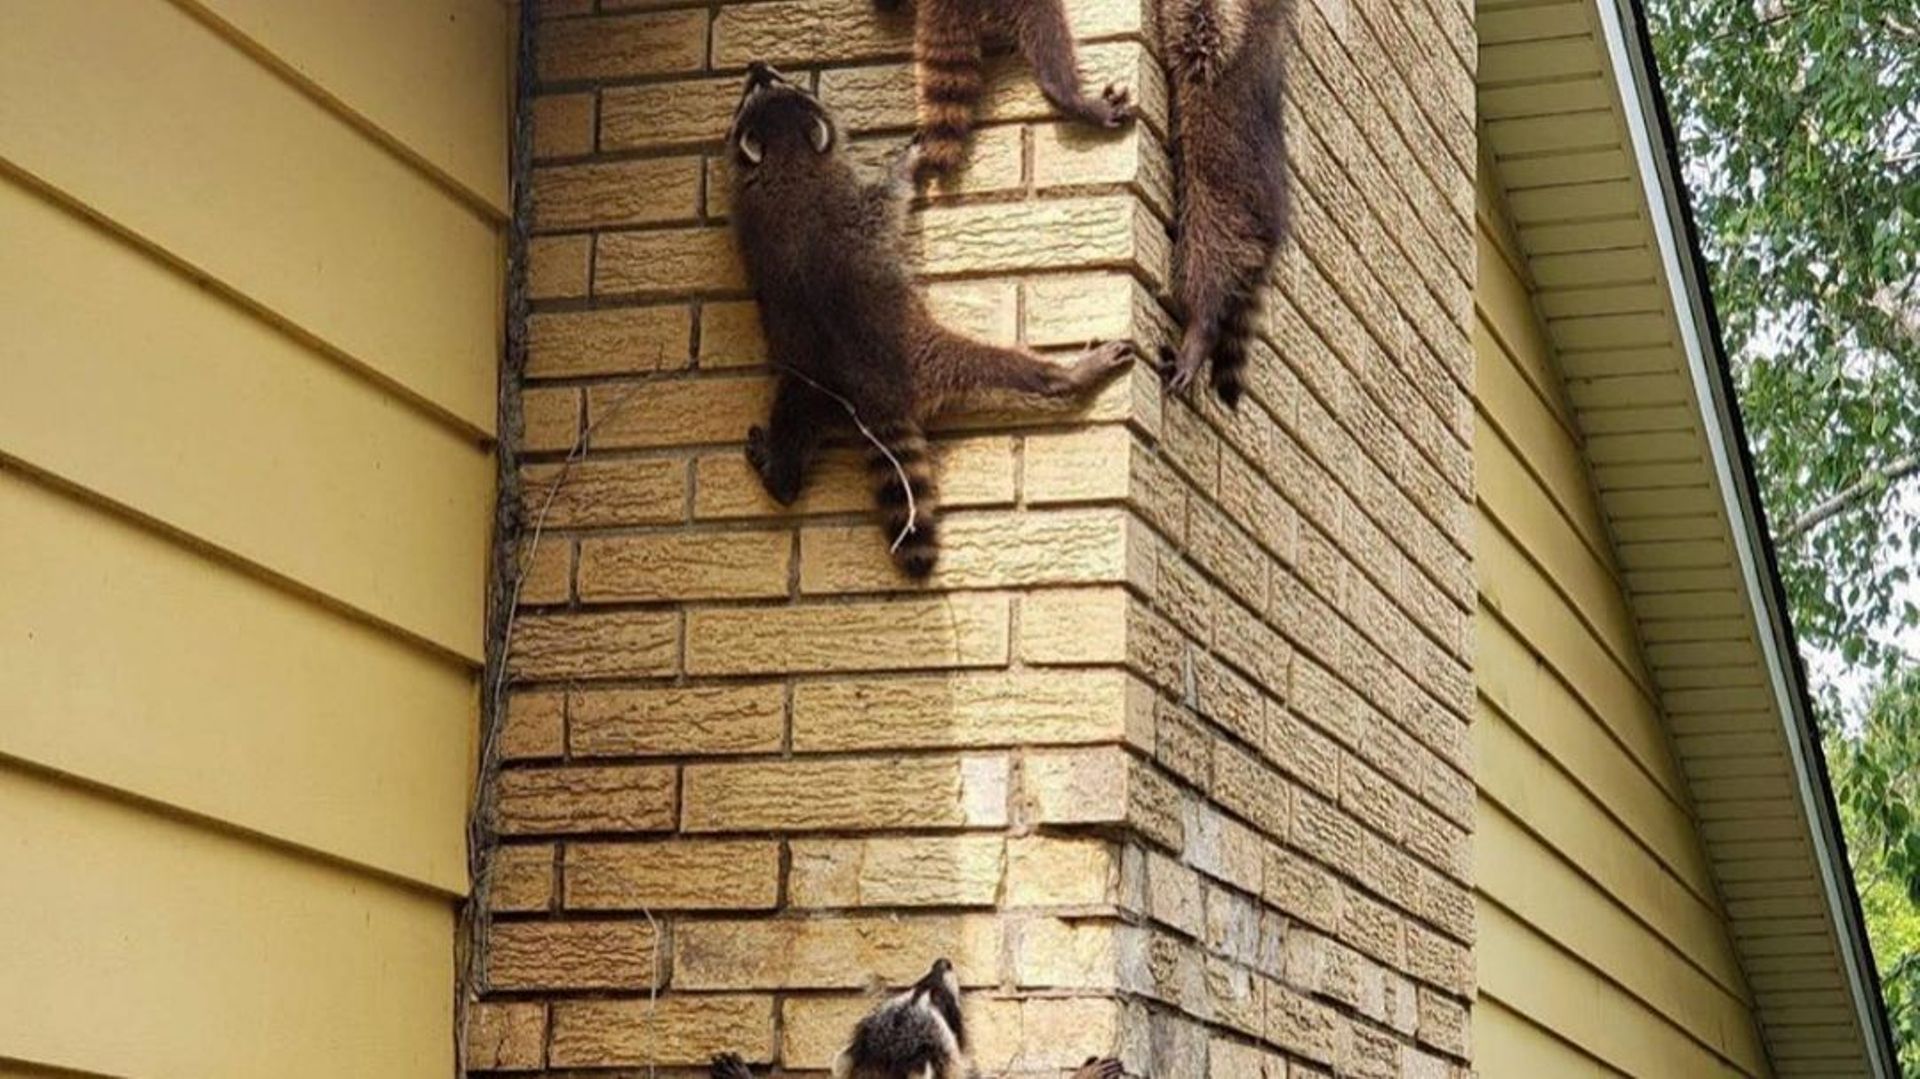 Les ratons laveurs adorent s'abriter sous les toits des maisons et font du dégât